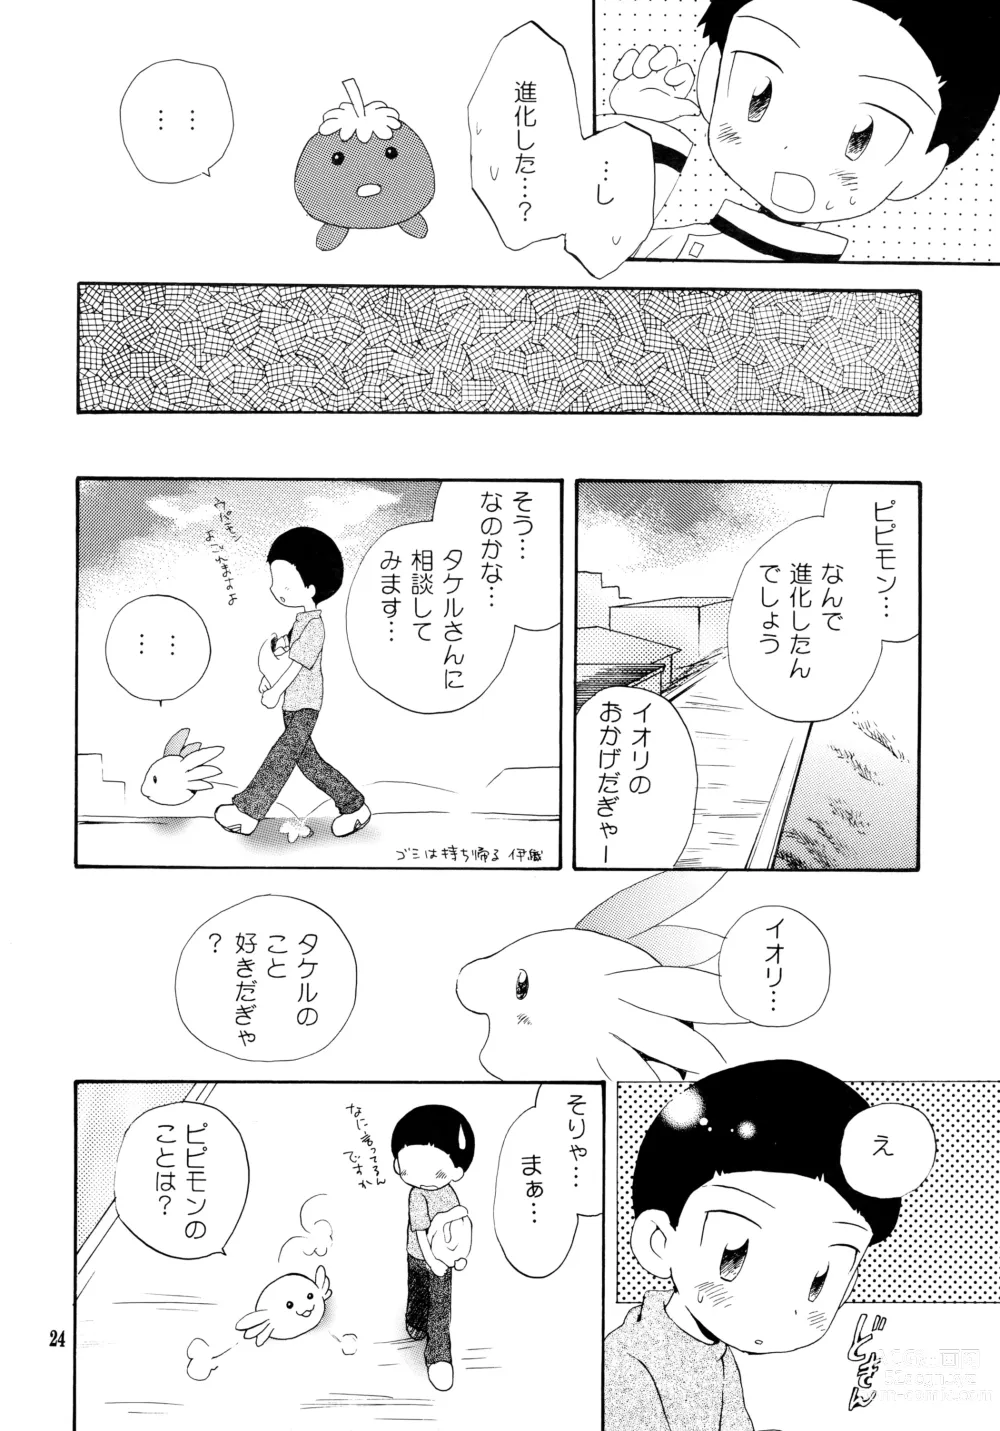 Page 23 of doujinshi Yorokobi mo Kanashimi mo Ikutoshitsuki